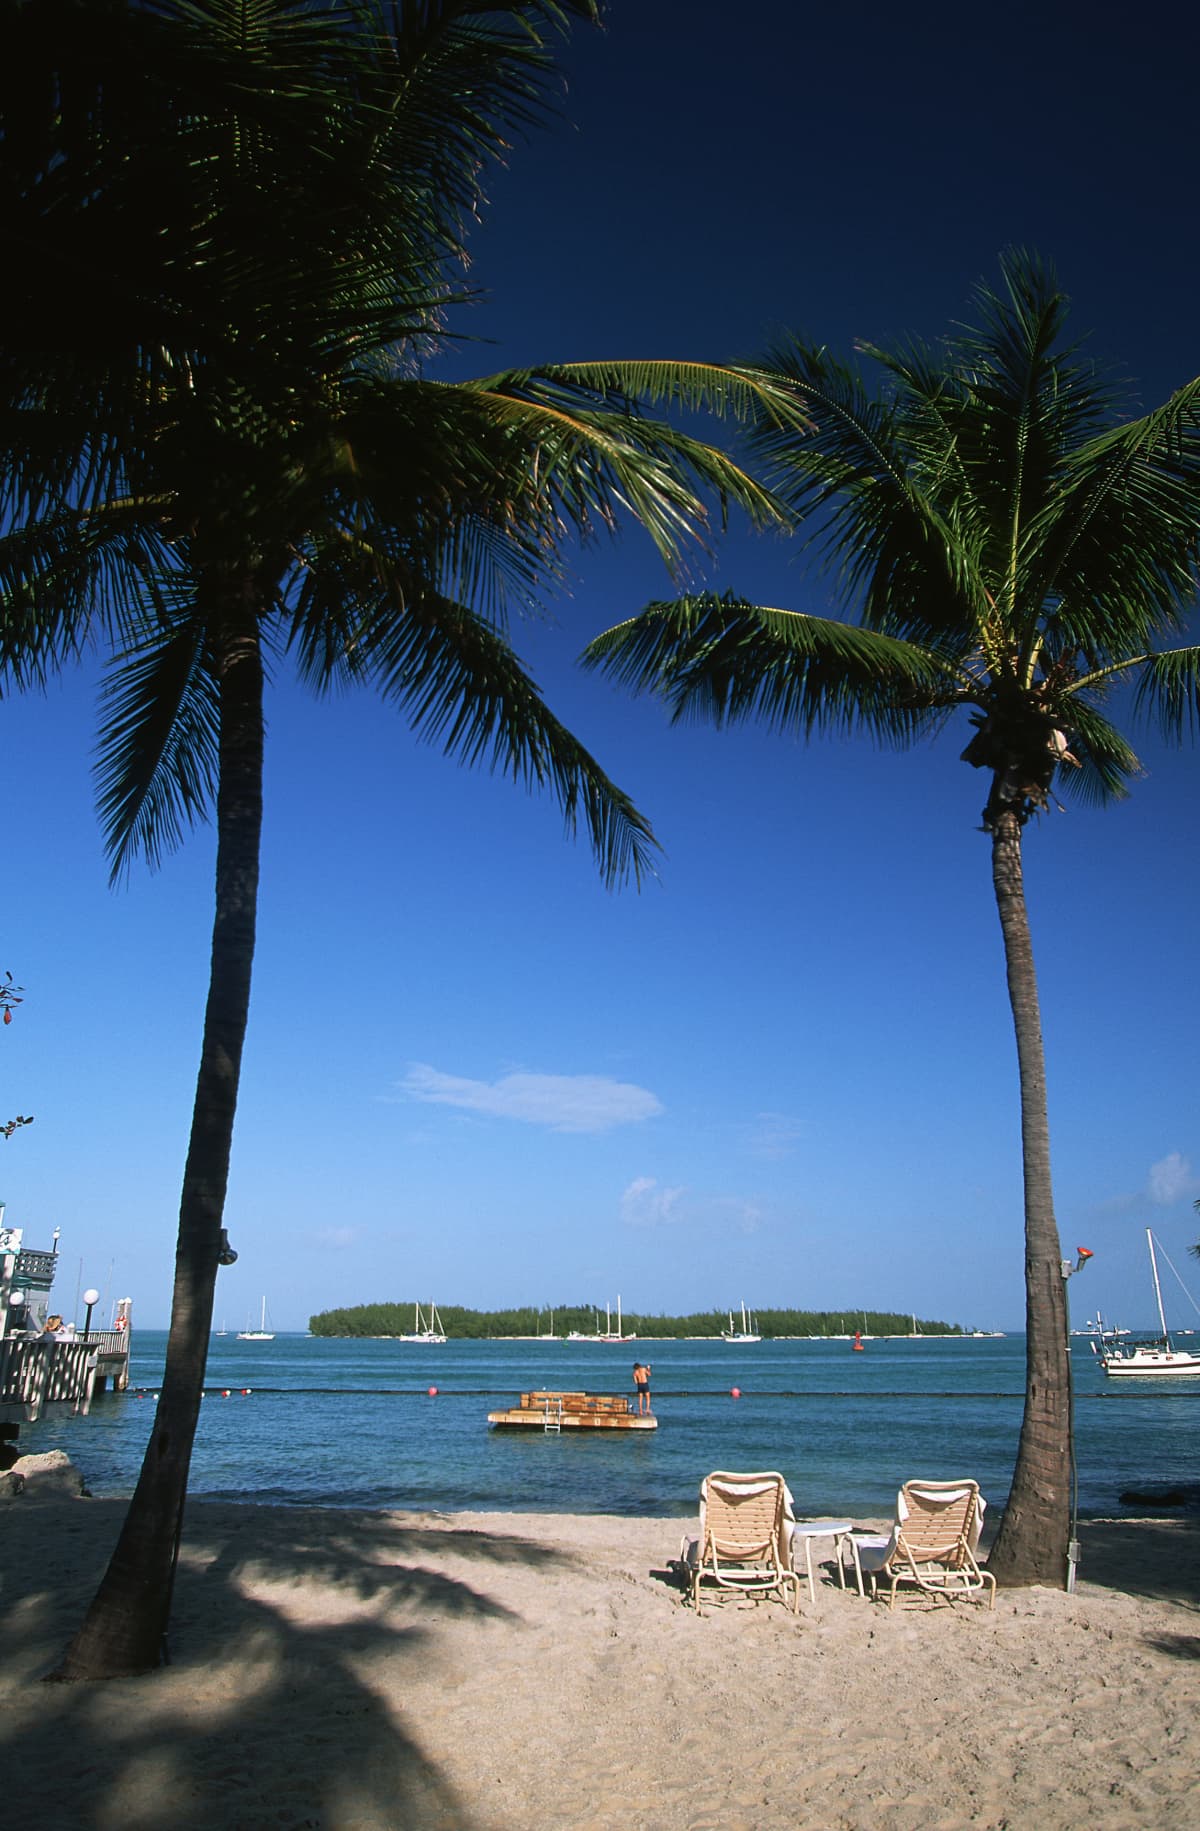 Palm trees on a Key West Beach